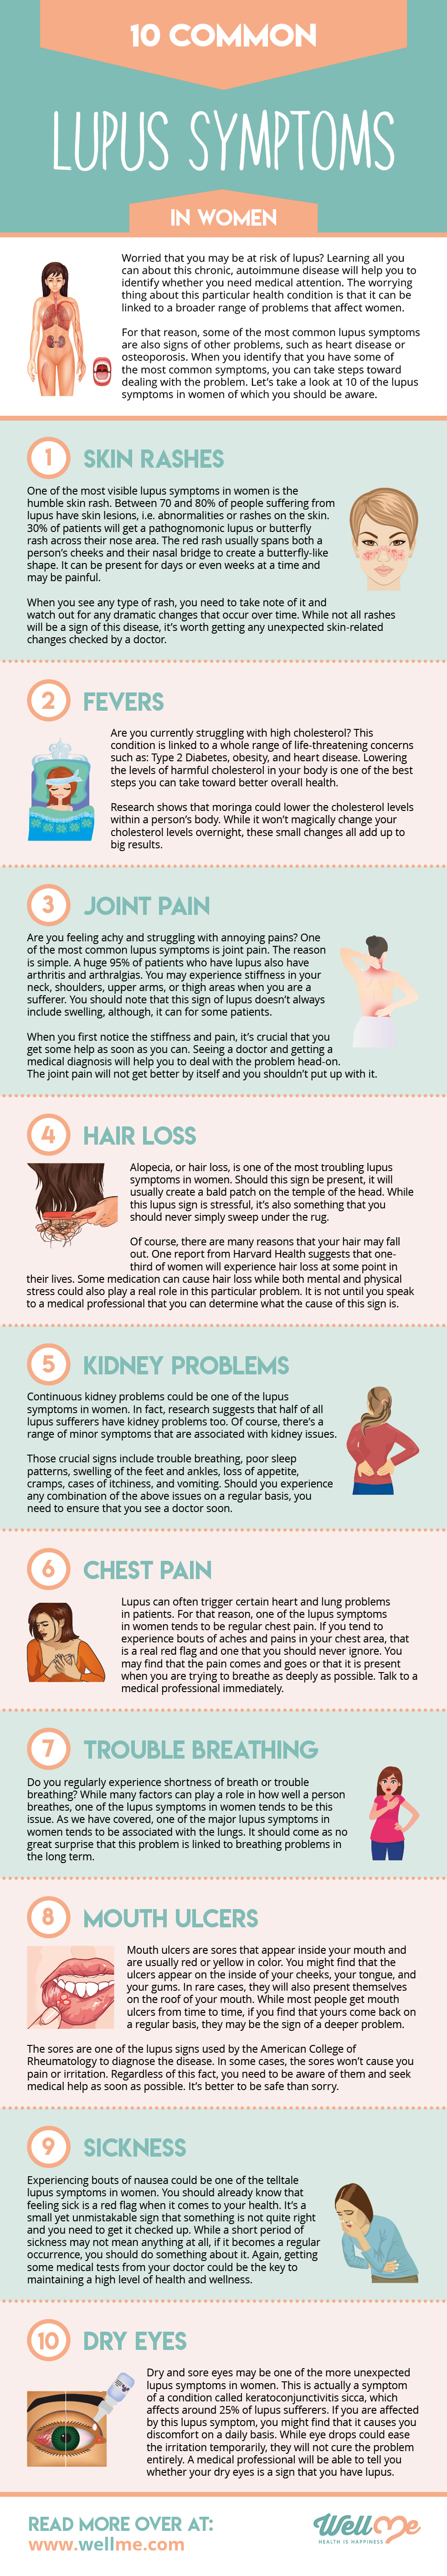 10 Common Lupus Symptoms in Women